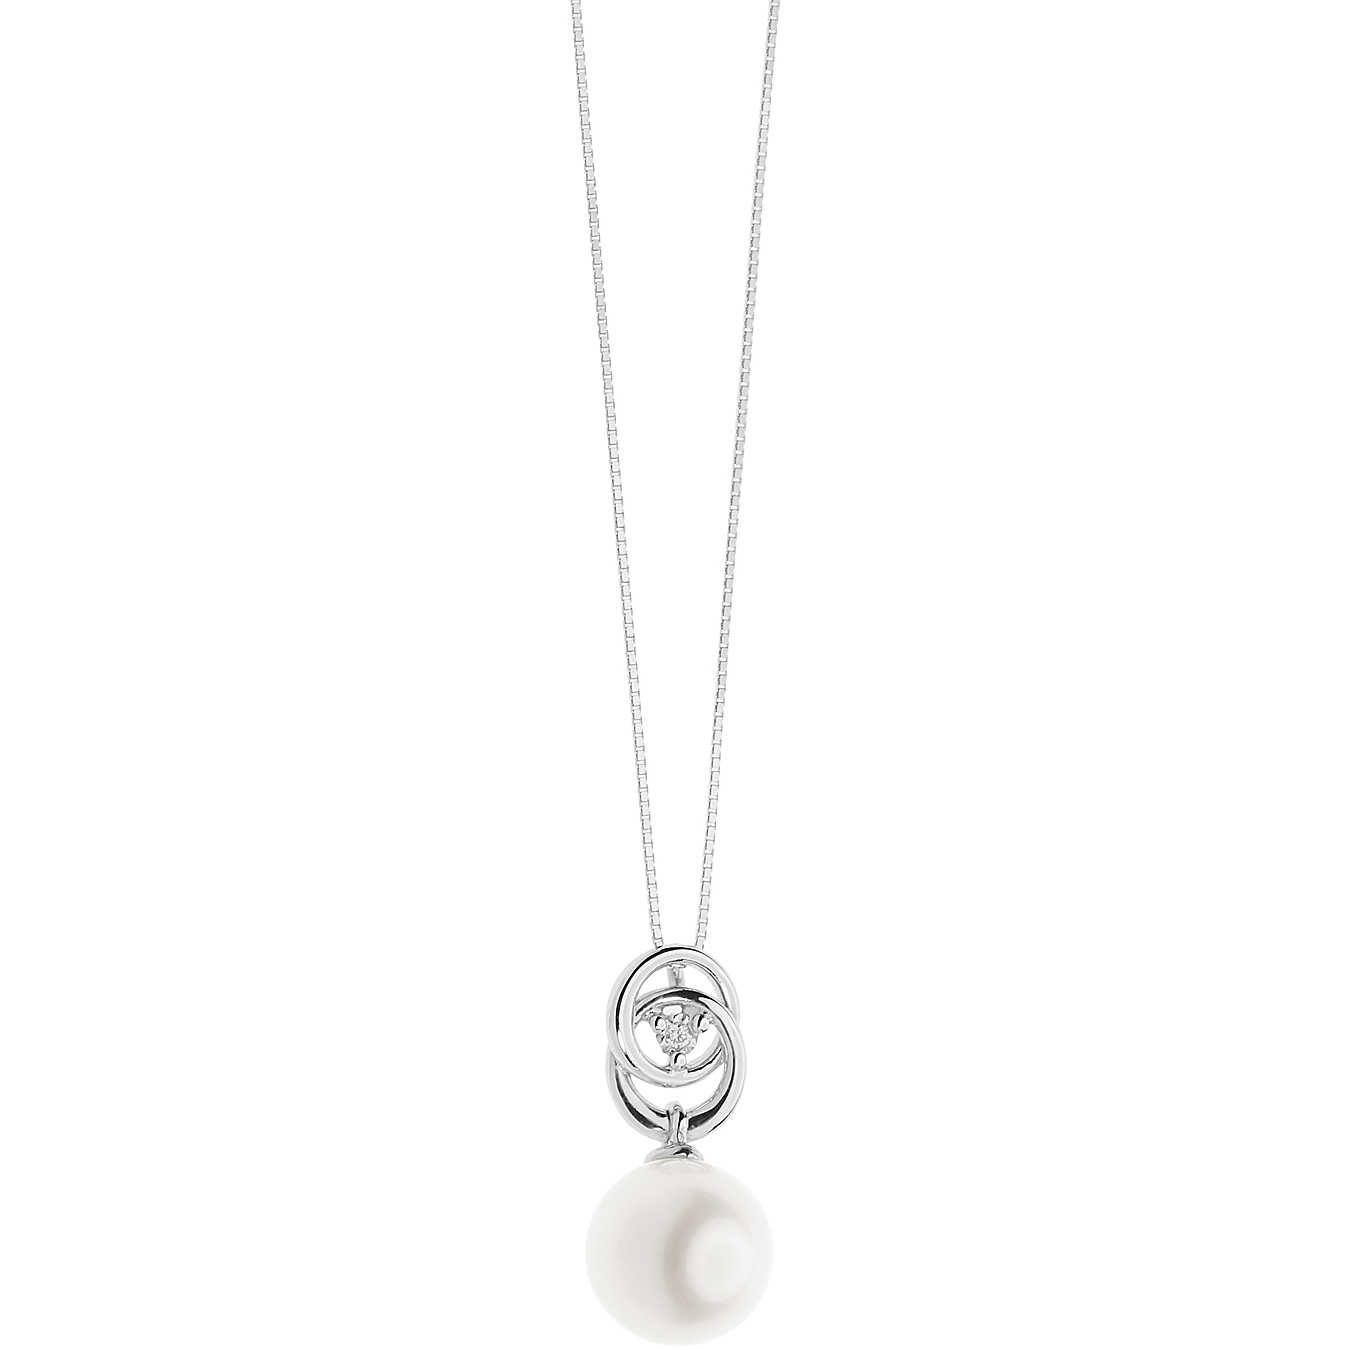 Women’s Charm Comete Gioielli Love Pearls LPG 579